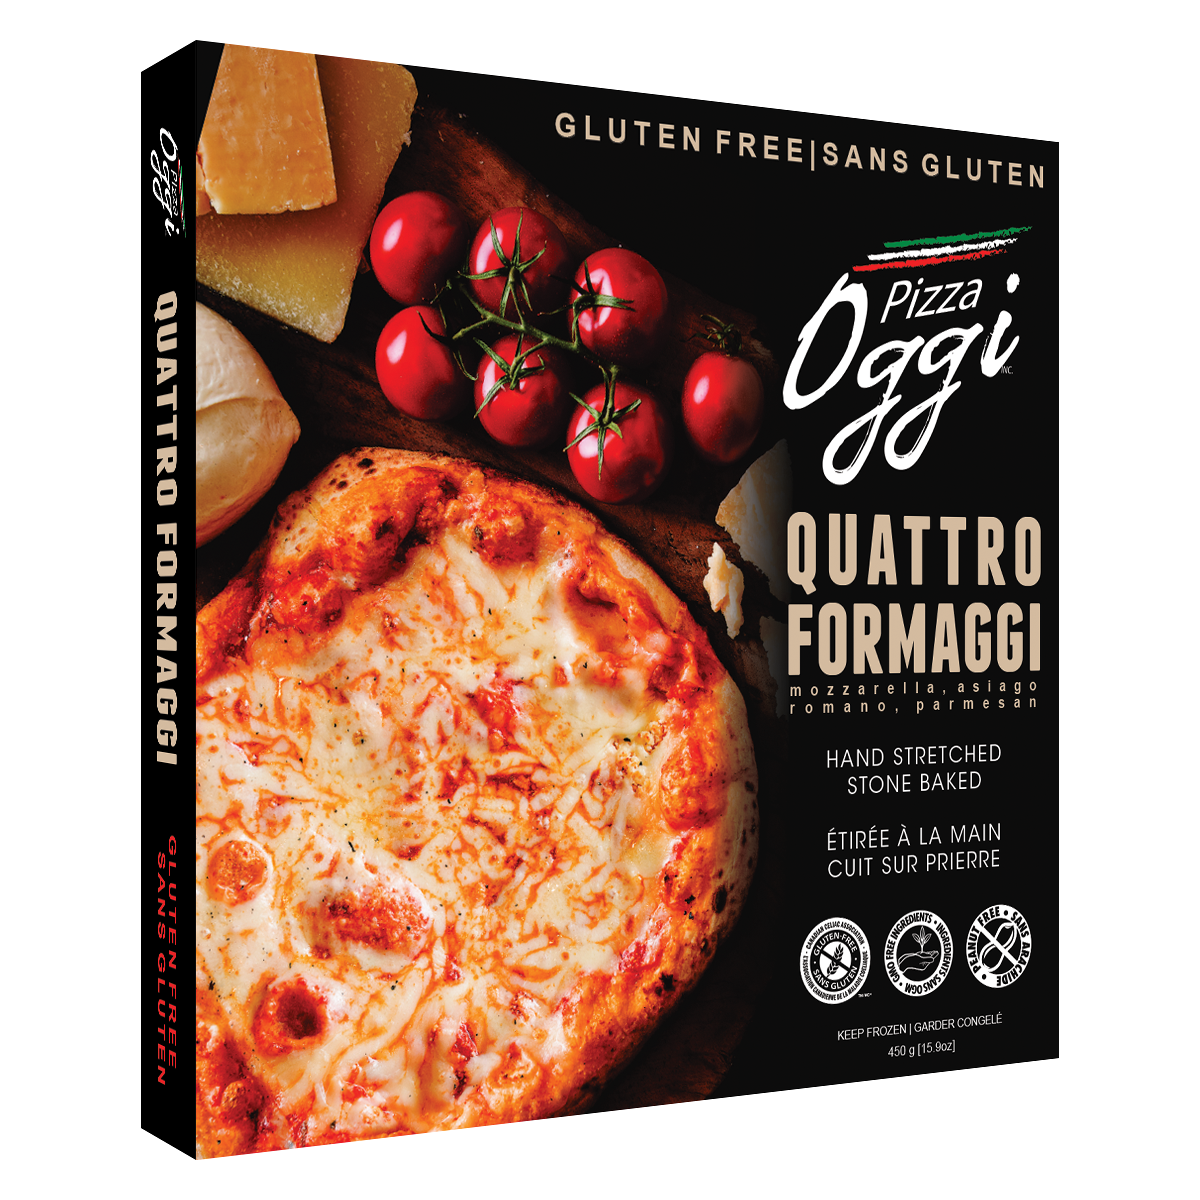 Quattro Formaggi GLUTEN FREE PIZZA product image